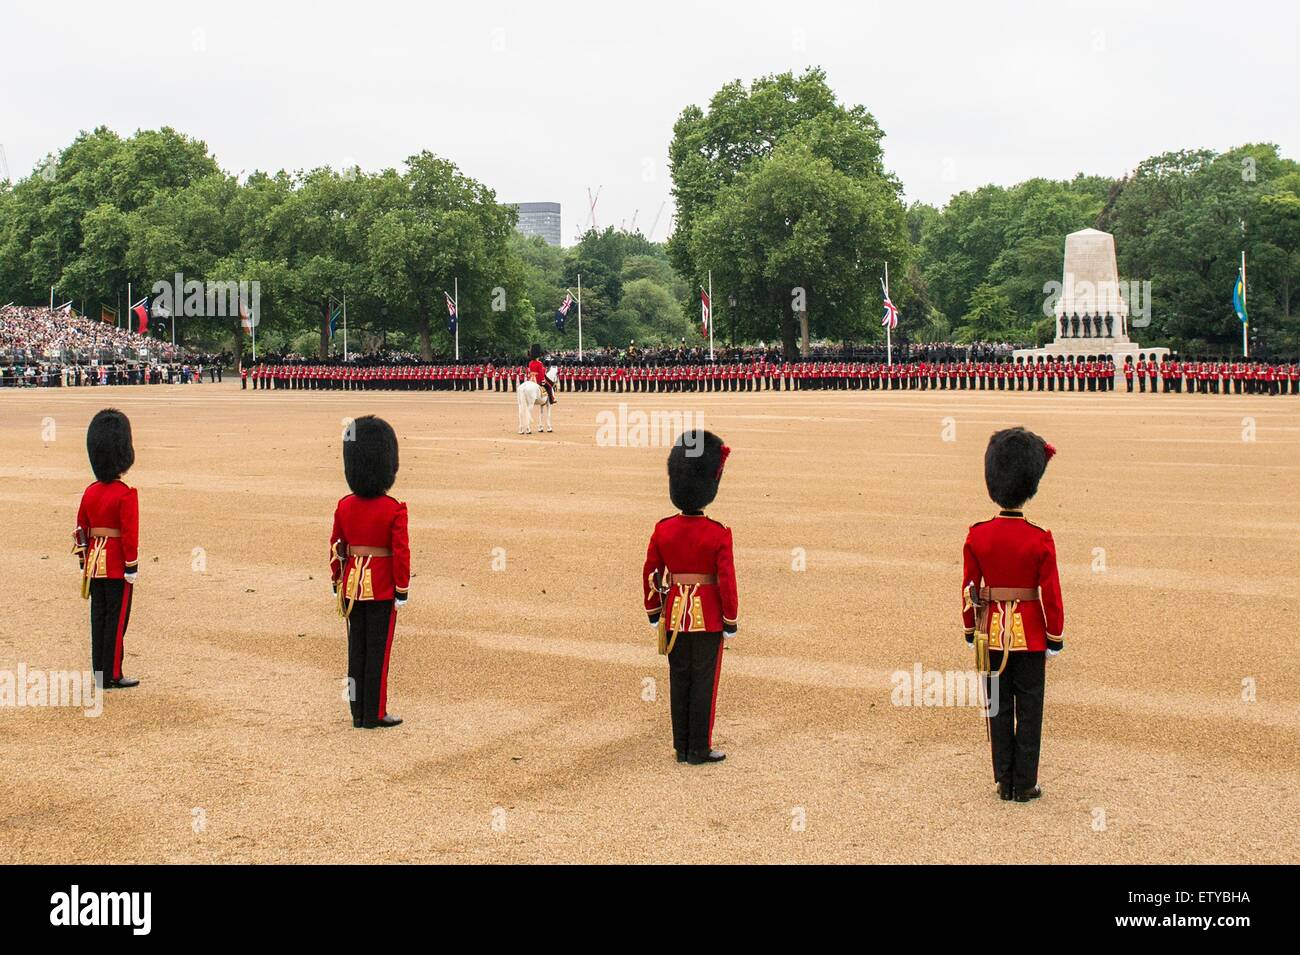 Britische militärische Guard of Honor während der jährlichen Trooping die Farbe Parade markiert den offiziellen Geburtstag der Königin Elizabeth II auf Horse Guards Parade 13. Juni 2015 in London, England. Stockfoto